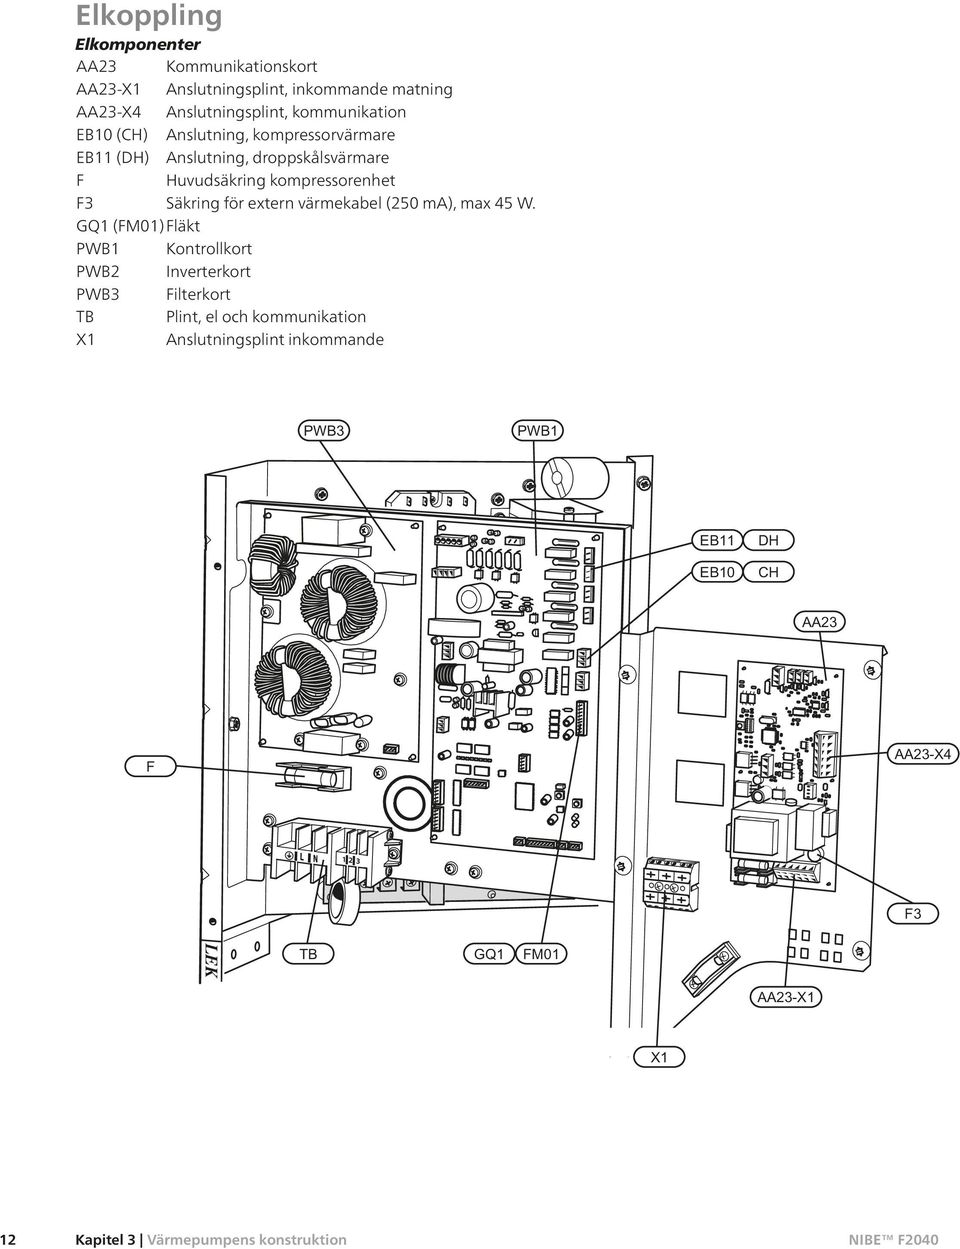 Huvudsäkring kompressorenhet F3 Säkring för extern värmekabel (250 ma), max 45 W.